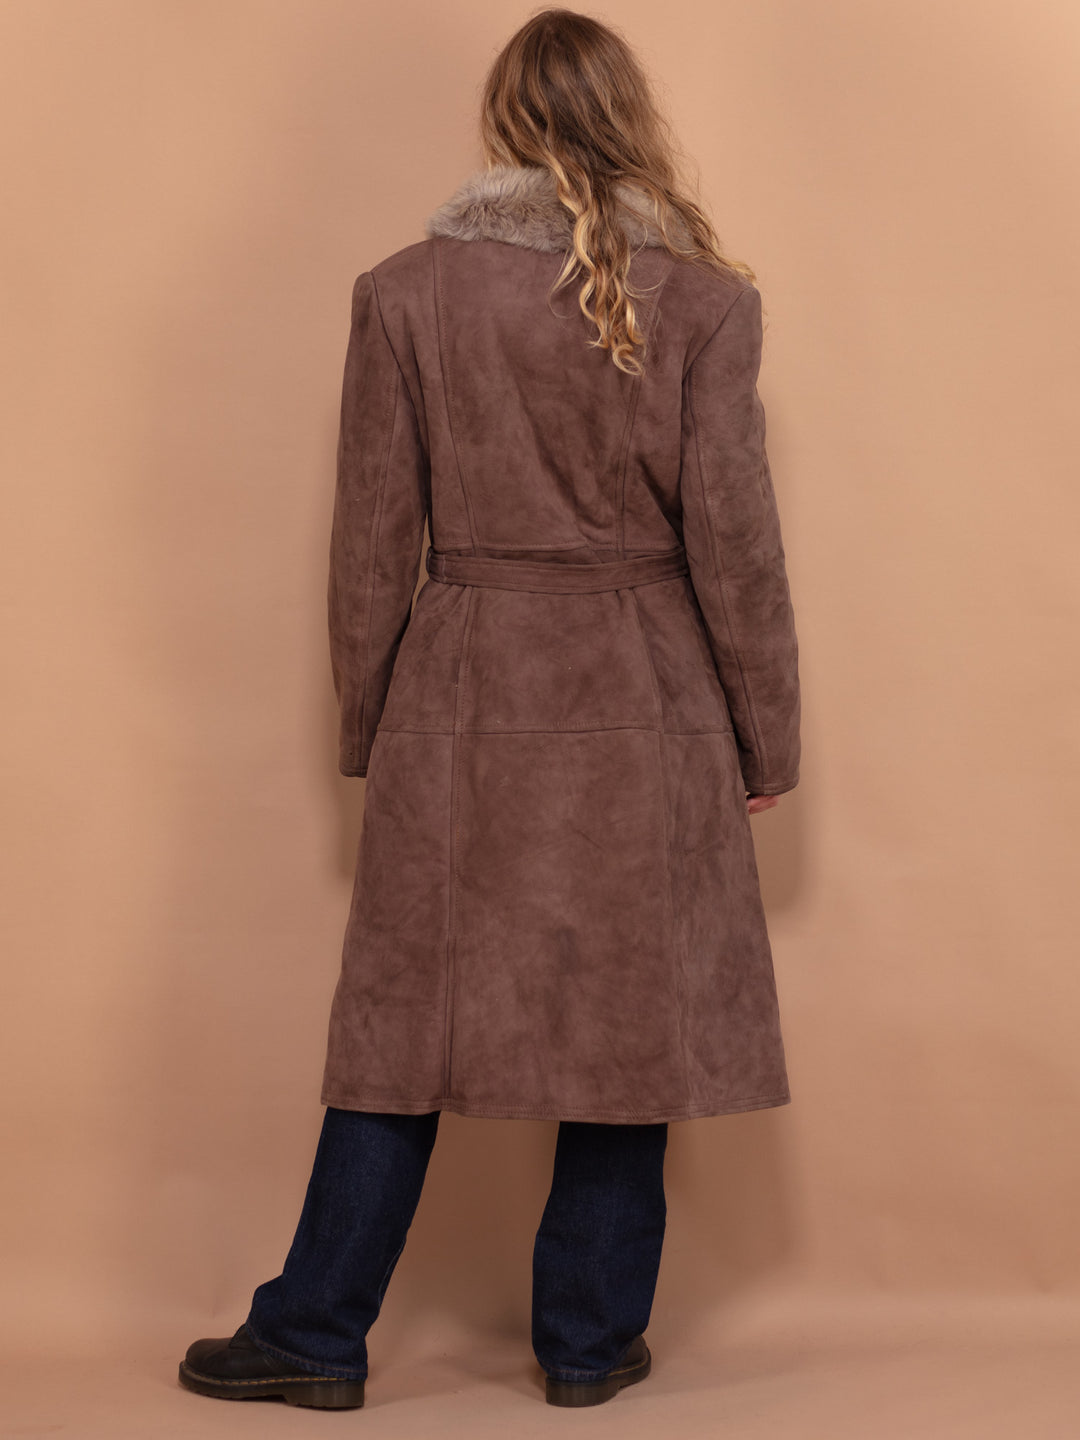 Penny Lane Sheepskin Coat 70s, Size L Large, Shearling Suede Coat, Boho Style Sheepskin Overcoat, Vintage Outerwear, Sustainable Clothing